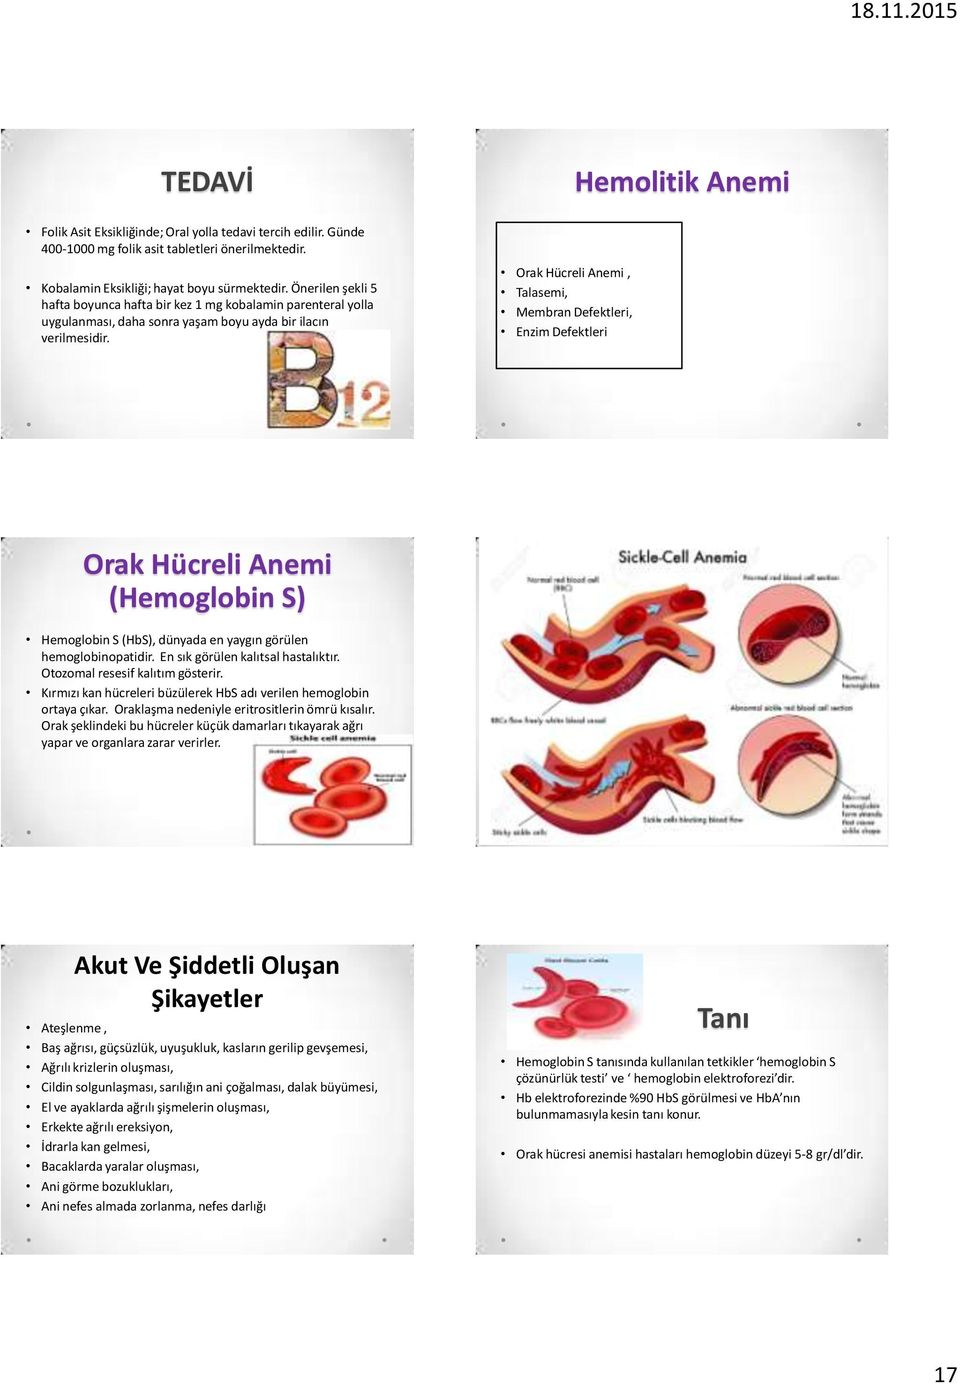 Orak Hücreli Anemi, Talasemi, Membran Defektleri, Enzim Defektleri Orak Hücreli Anemi (Hemoglobin S) Hemoglobin S (HbS), dünyada en yaygın görülen hemoglobinopatidir.